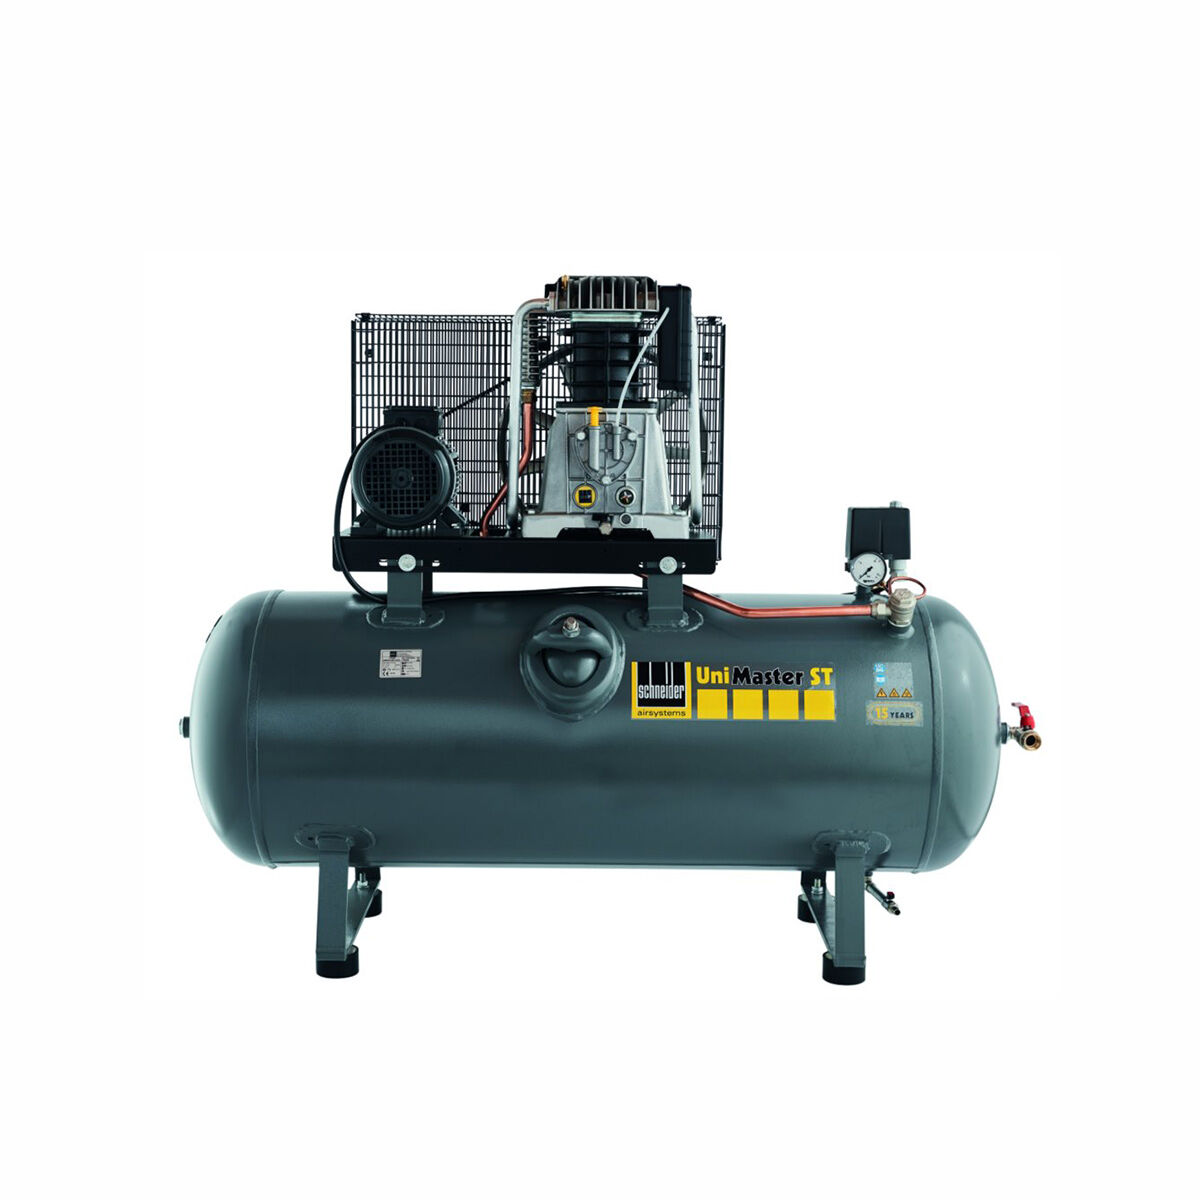 Schneider-Kompressor UNM STL 1000-15-500 1121580514